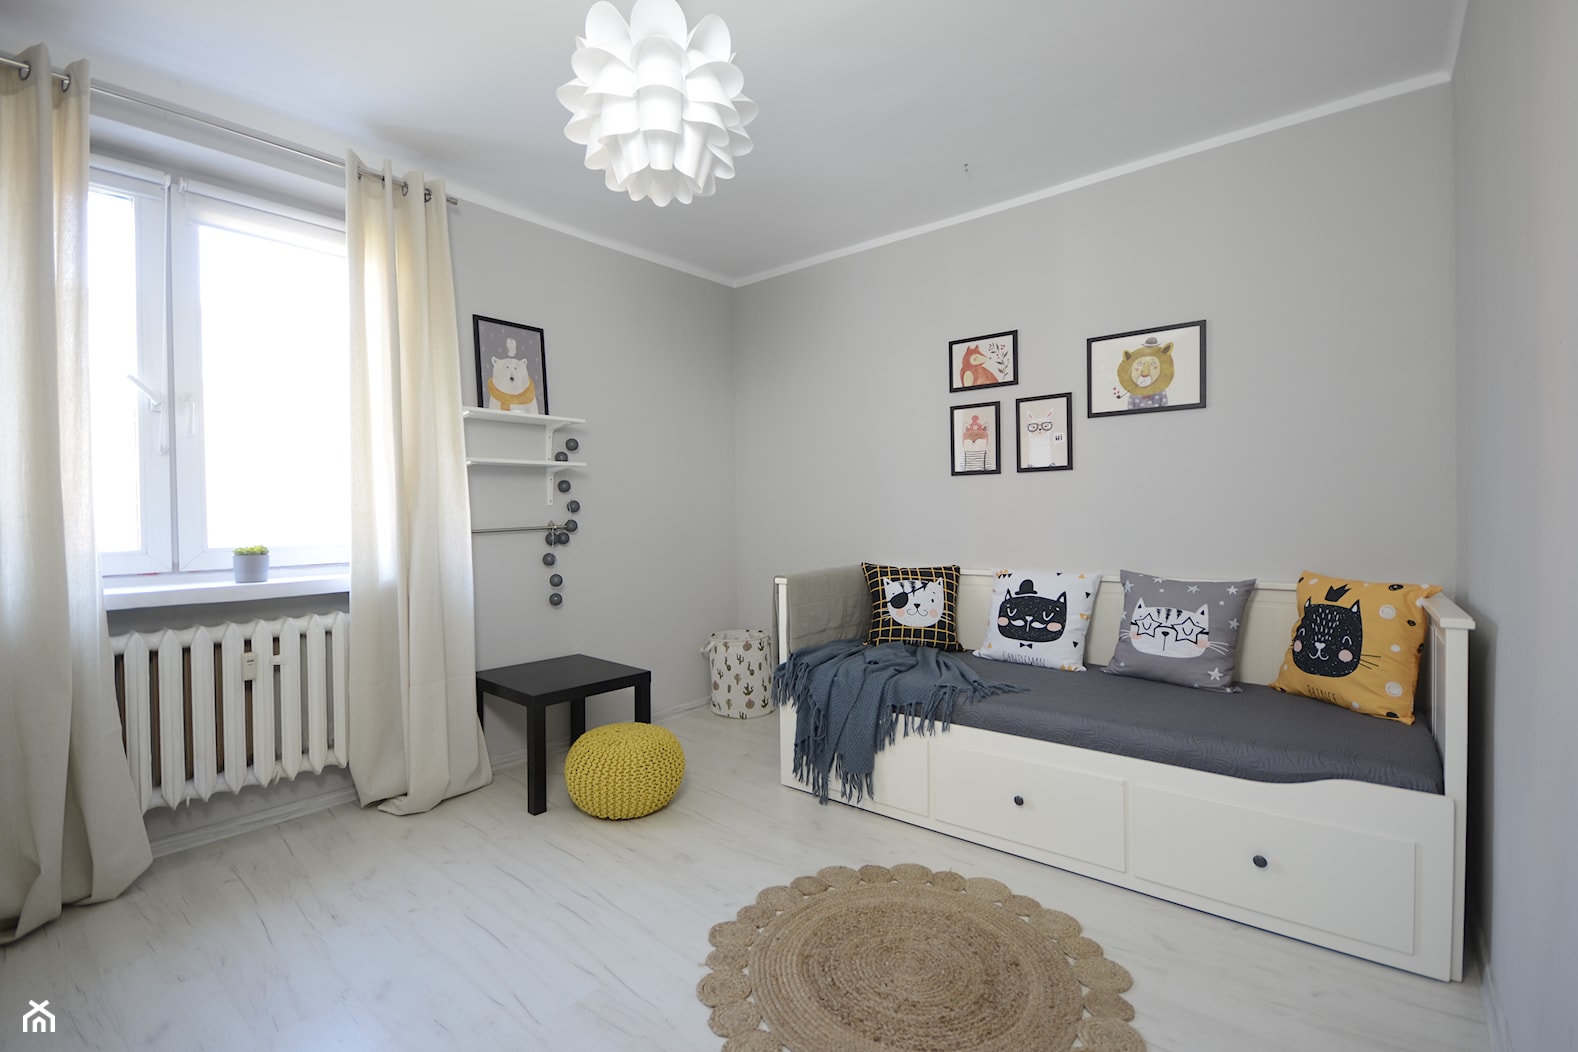 Metamorfoza pokoju - homestaging mieszkania, klient docelowy rodzina 2+1, wynajem - zdjęcie od Dekwadra Homestaging Aranżacja Projektowanie Wnętrz Wrocław - Homebook